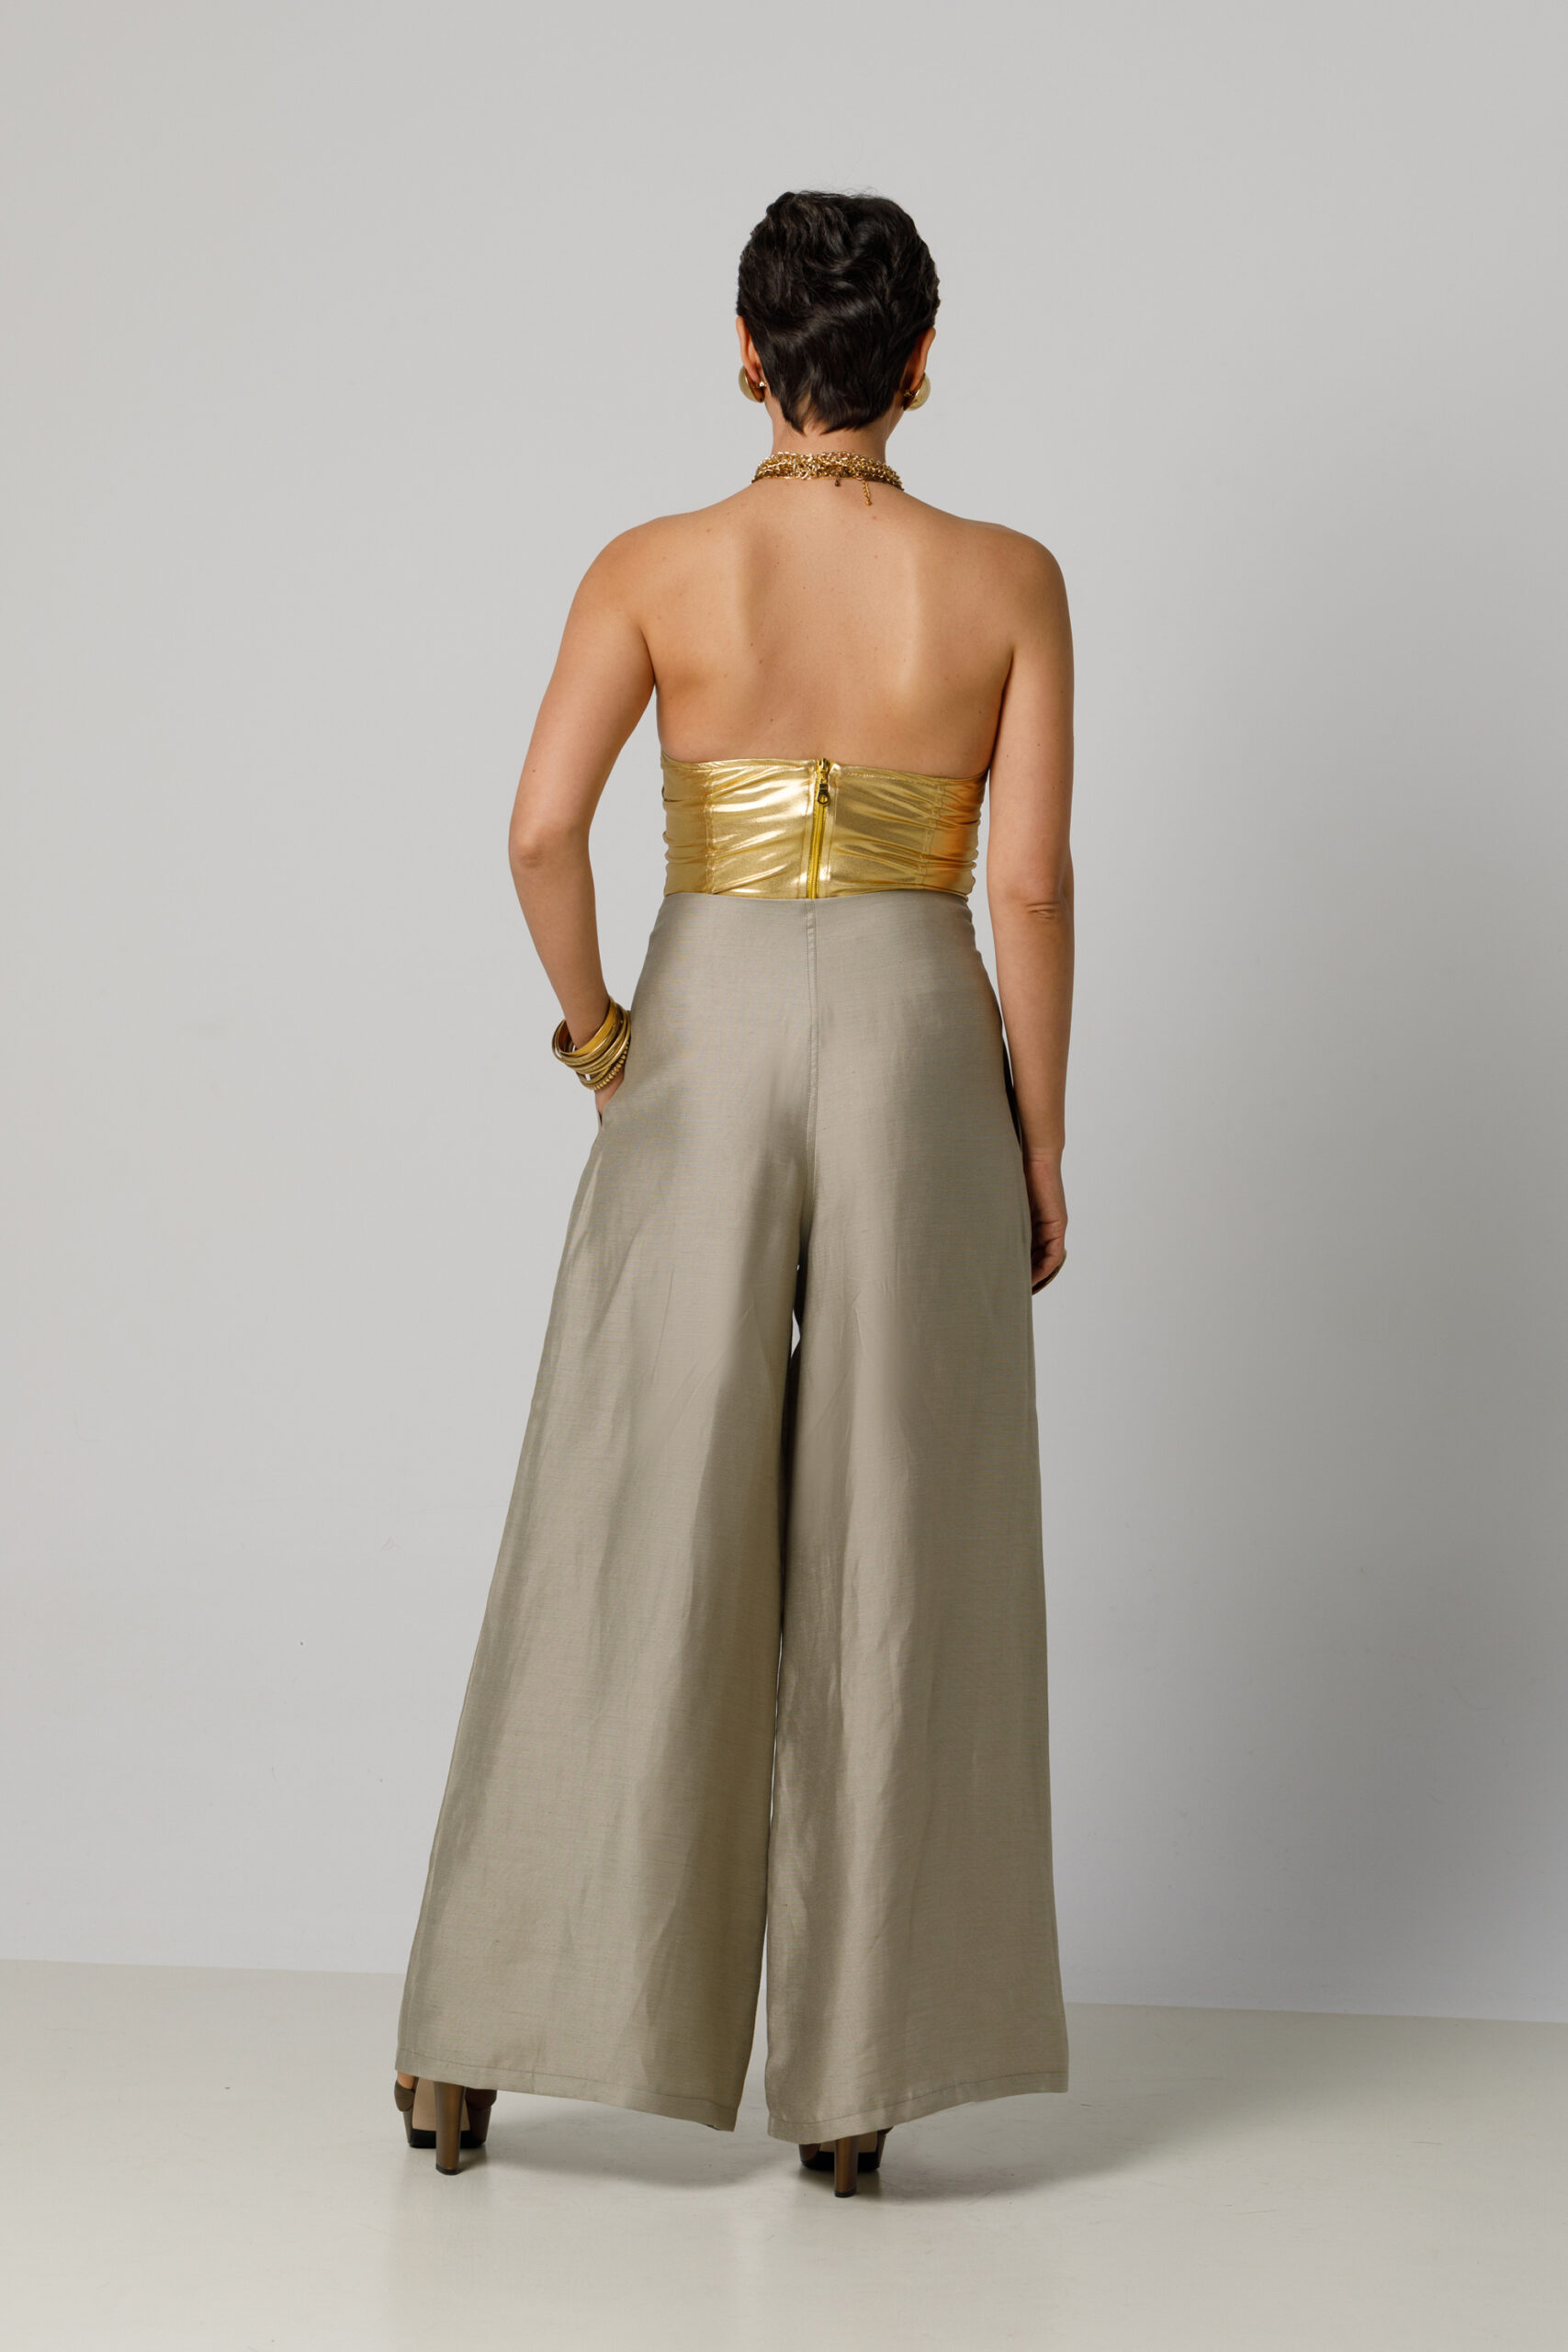 Pantalon ABBY casual din in cu nasturi aurii. Materiale naturale, design unicat, cu broderie si aplicatii handmade